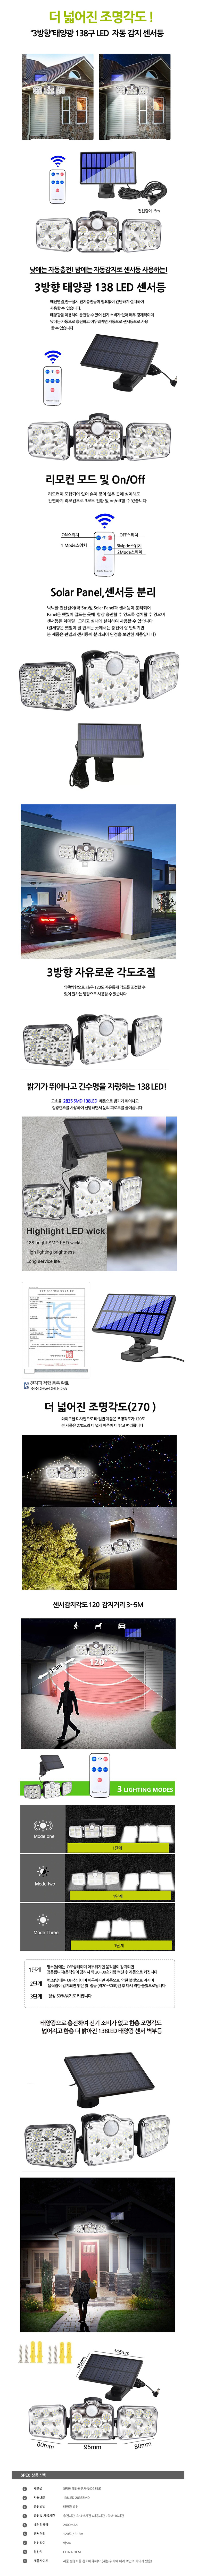 LED solar sensor lighting 3.jpg